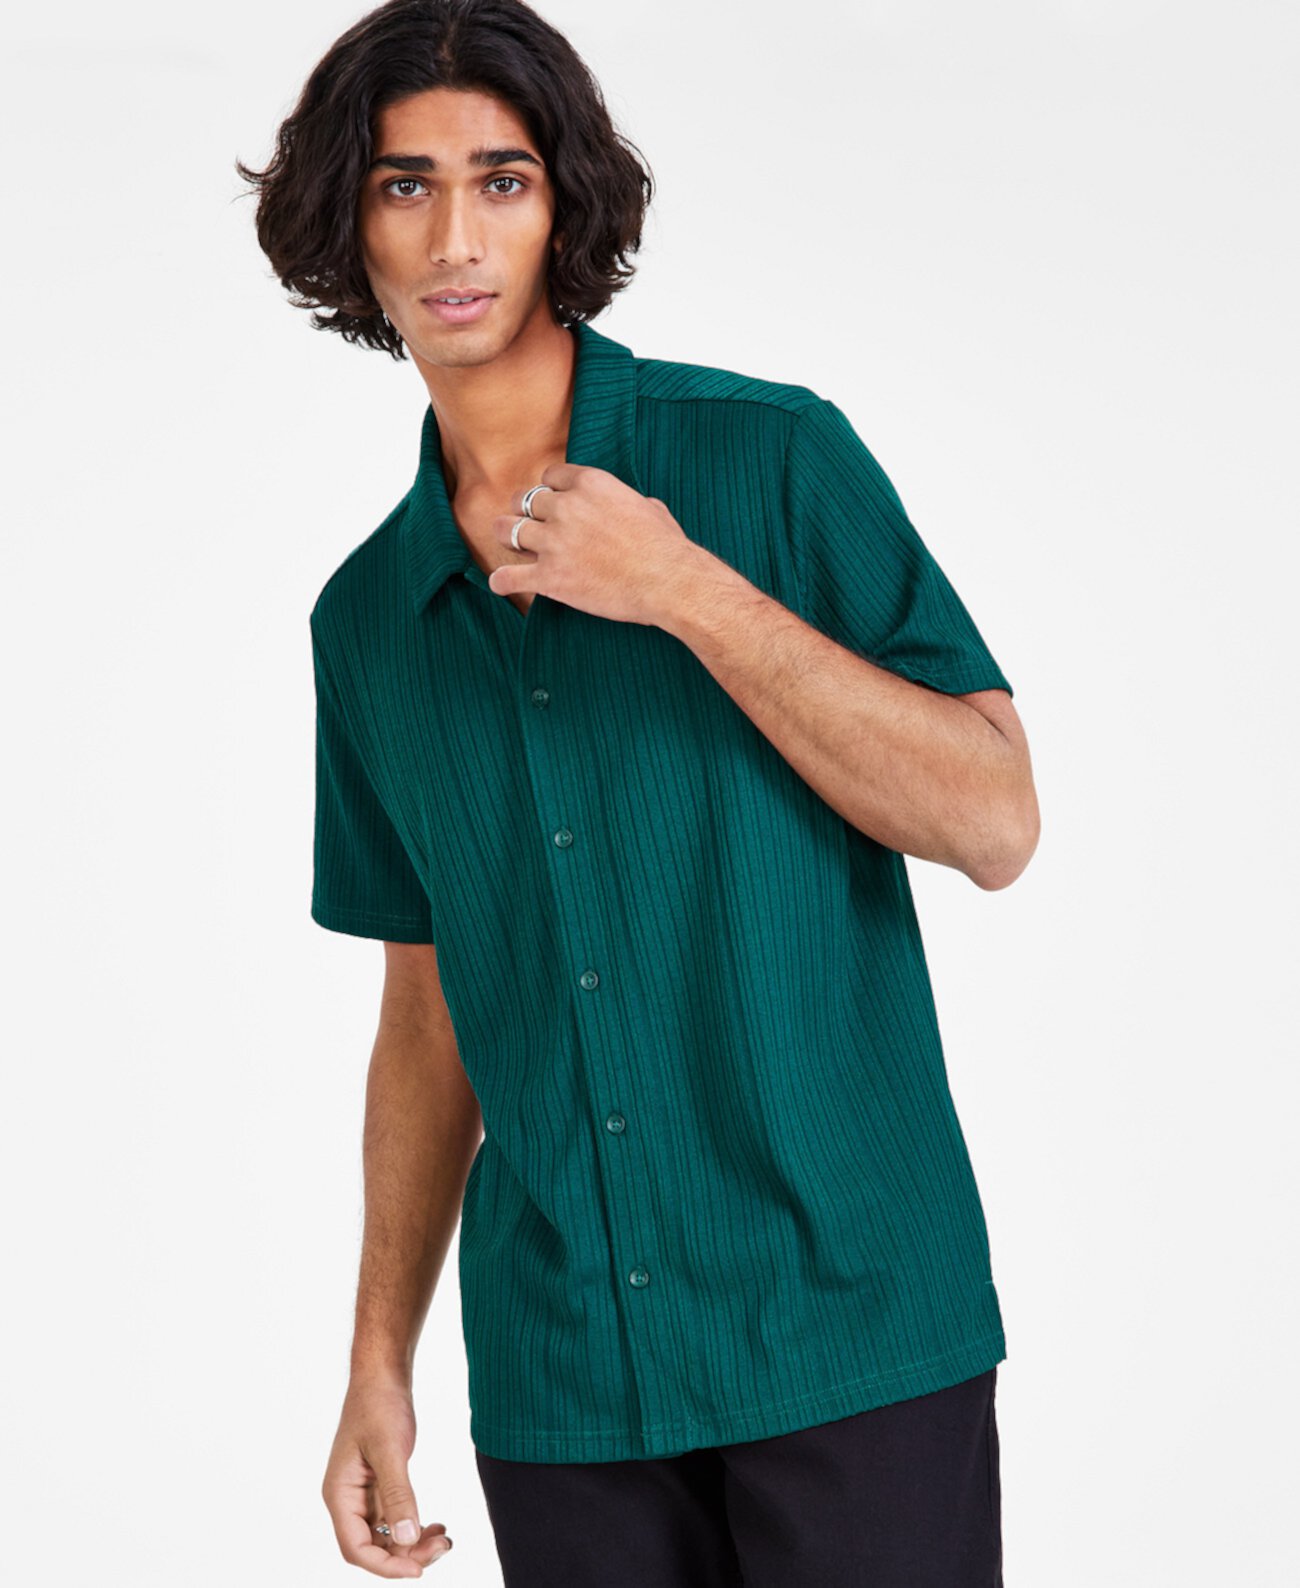 Мужская трикотажная рубашка с короткими рукавами на пуговицах в рубчик, созданная для Macy's I.N.C. International Concepts